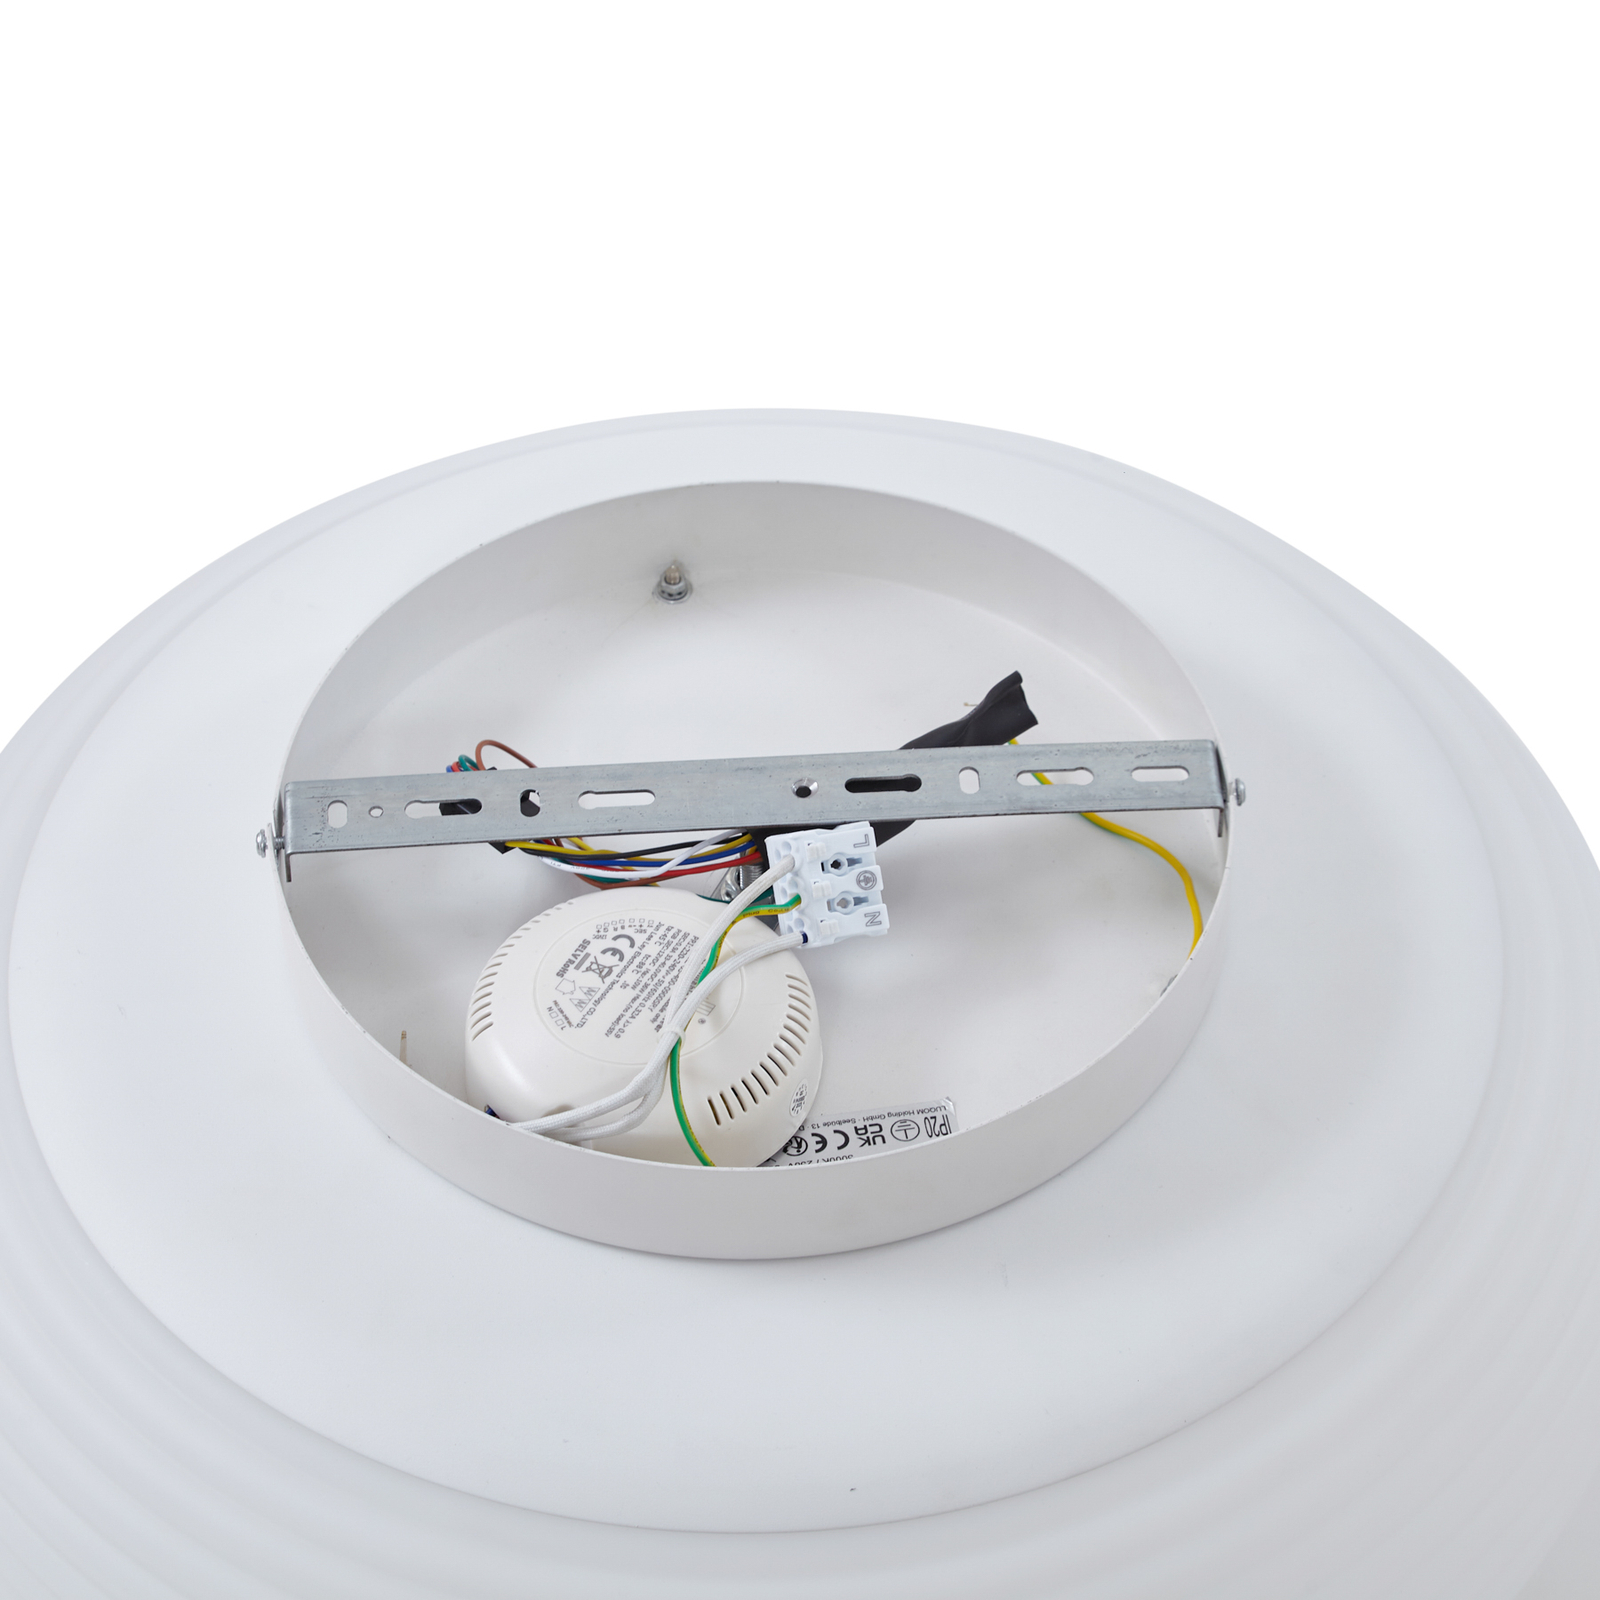 Lucande Smart LED stropna svjetiljka Bolti, bijela, RGBW, CCT, Tuya